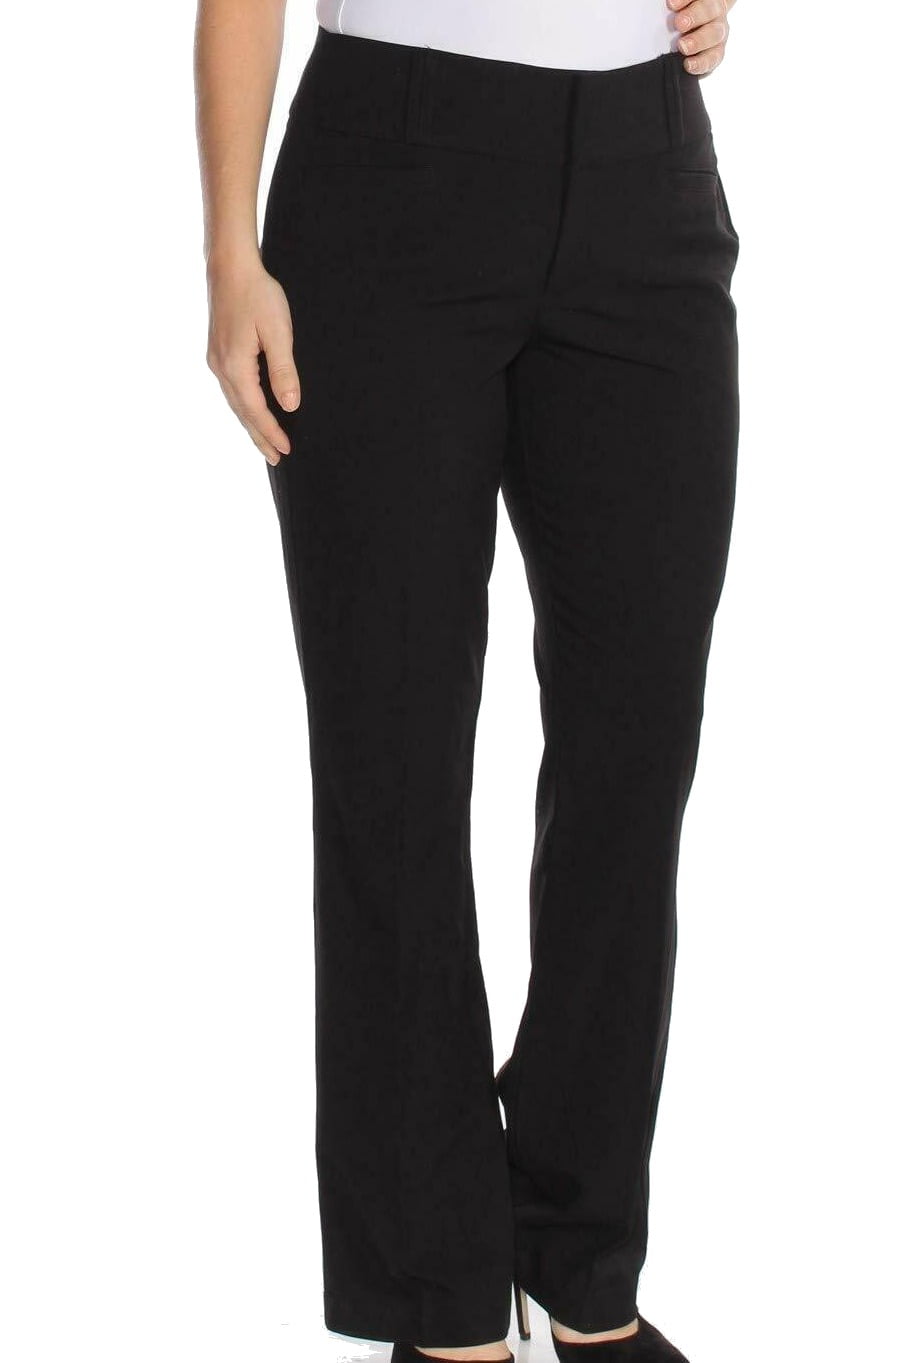 XOXO - XOXO Womens Black Pants Juniors Size: 3 - Walmart.com - Walmart.com